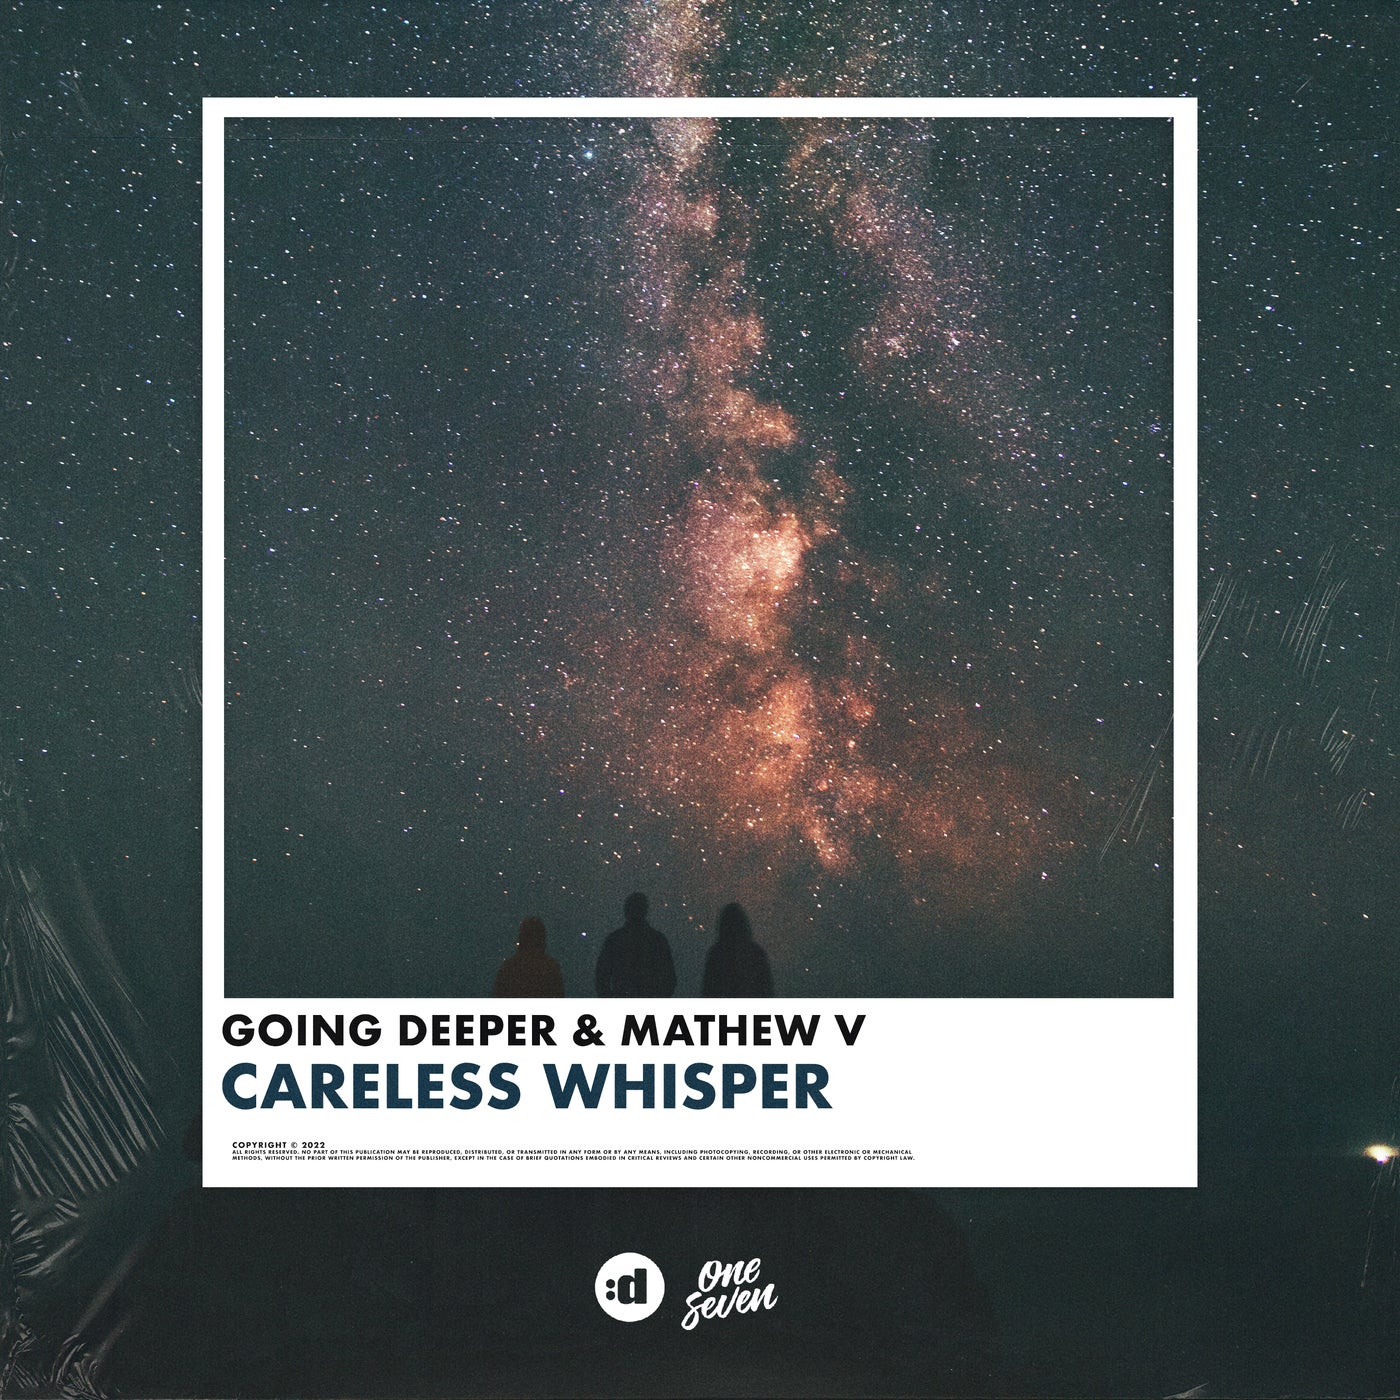 Whisper careless The Story